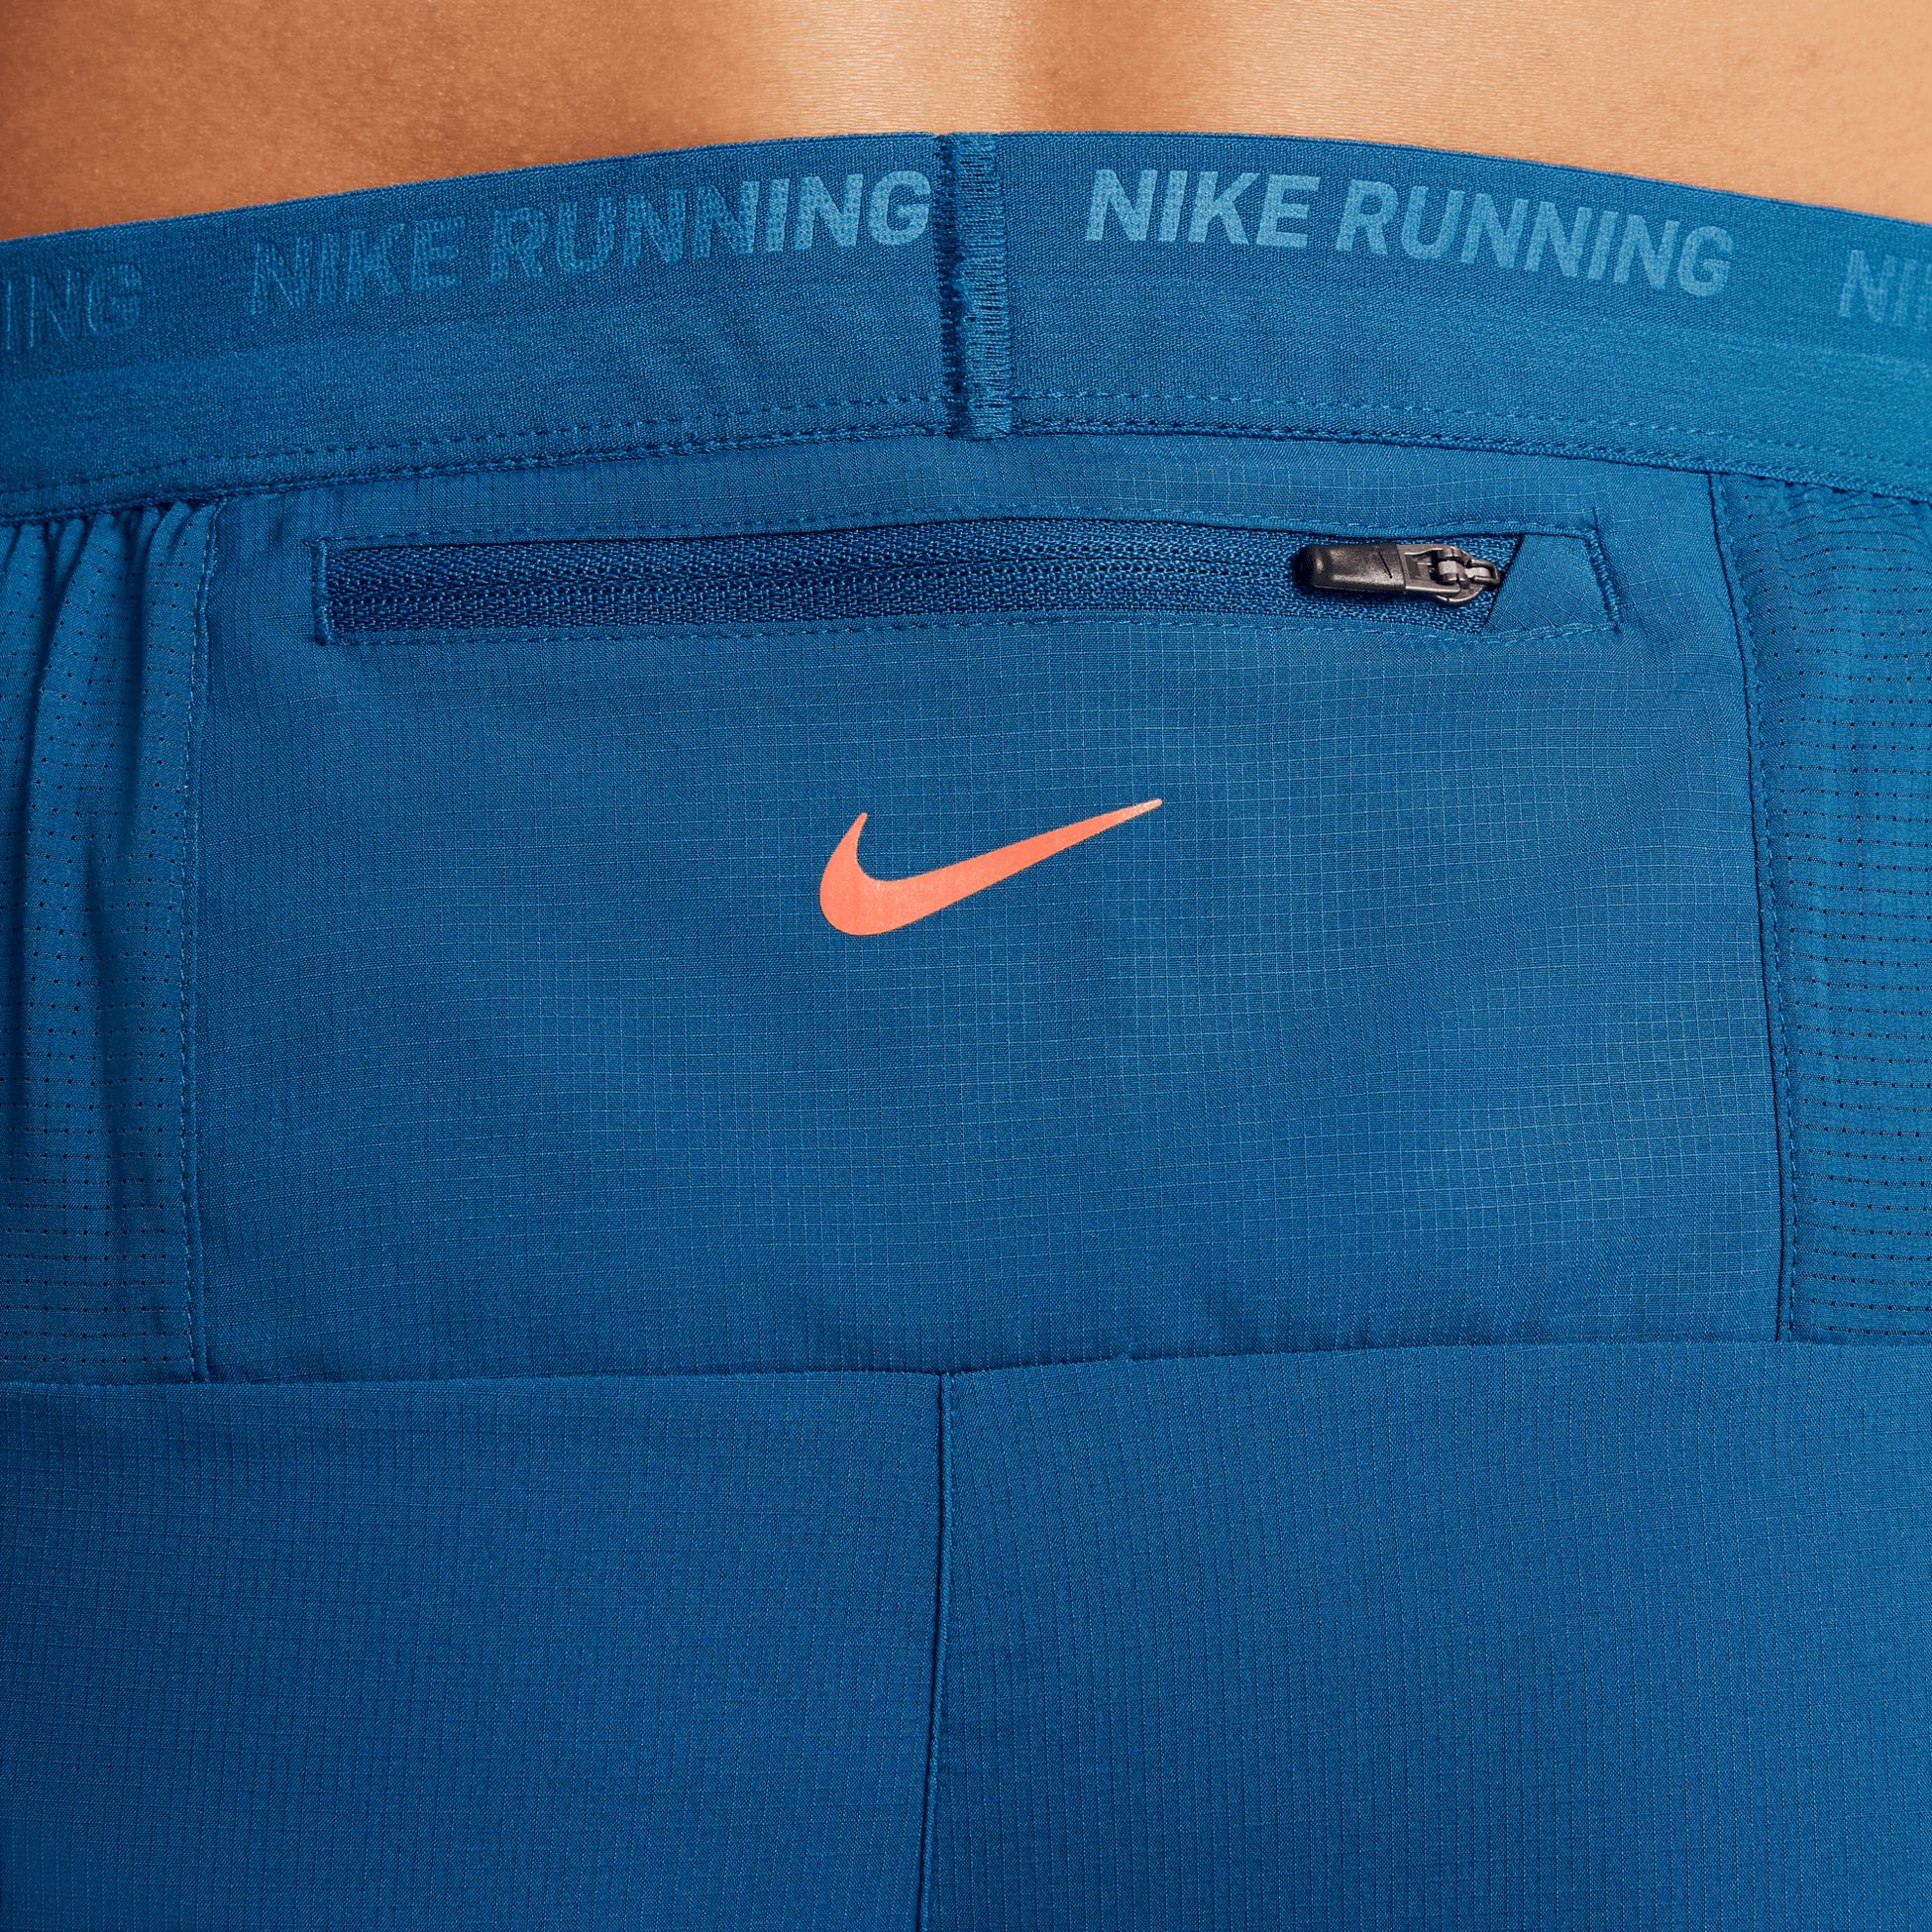 NIKE, Nike Stride Running Energy Men's 5"